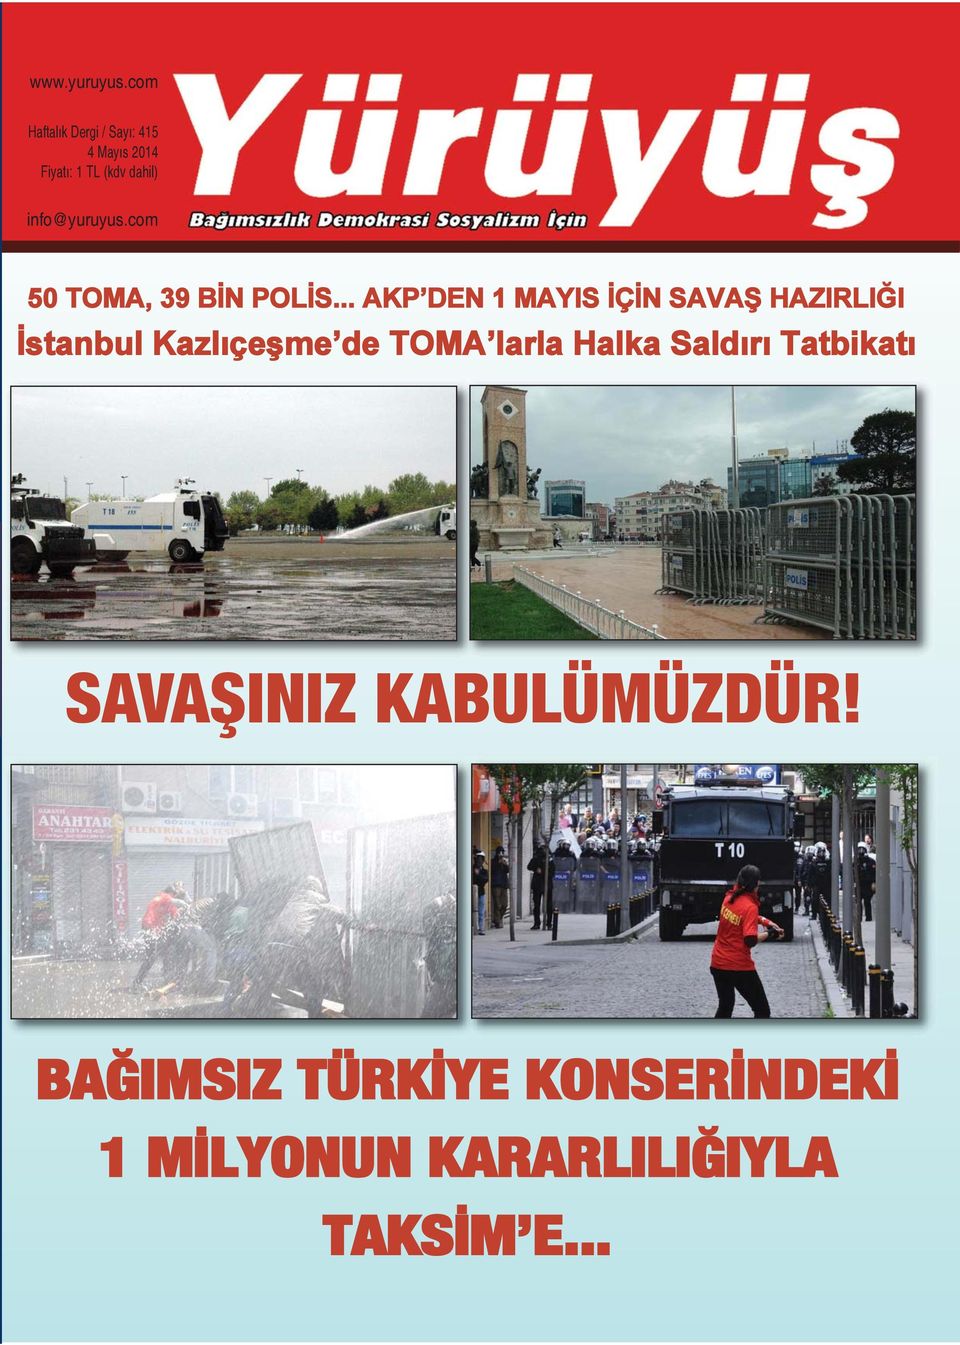 .. AKP DEN 1 MAYIS İÇİN SAVAŞ HAZIRLIĞI İstanbul Kazlıçeşme de TOMA